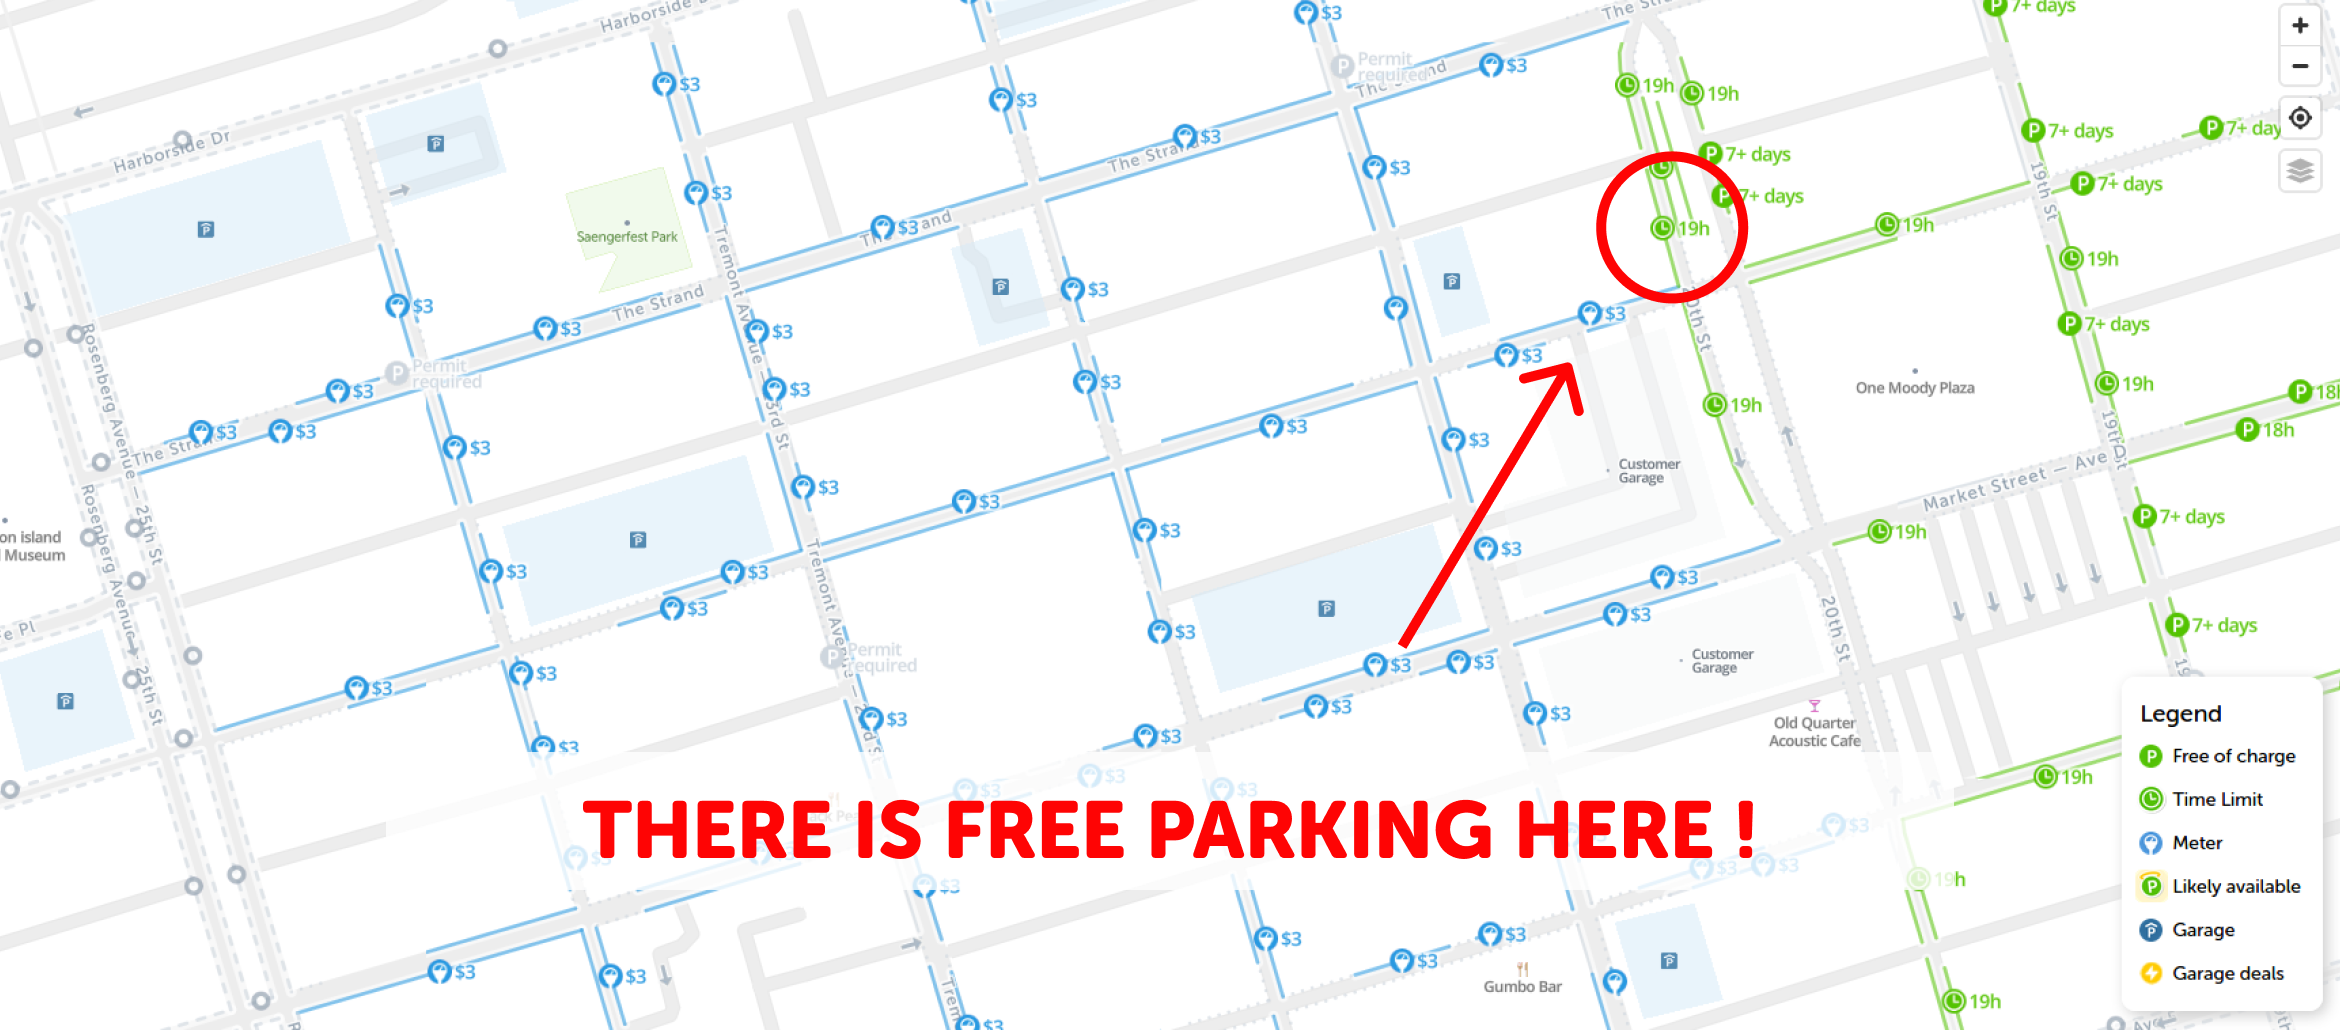 map of free parking in Galveston - SpotAngels